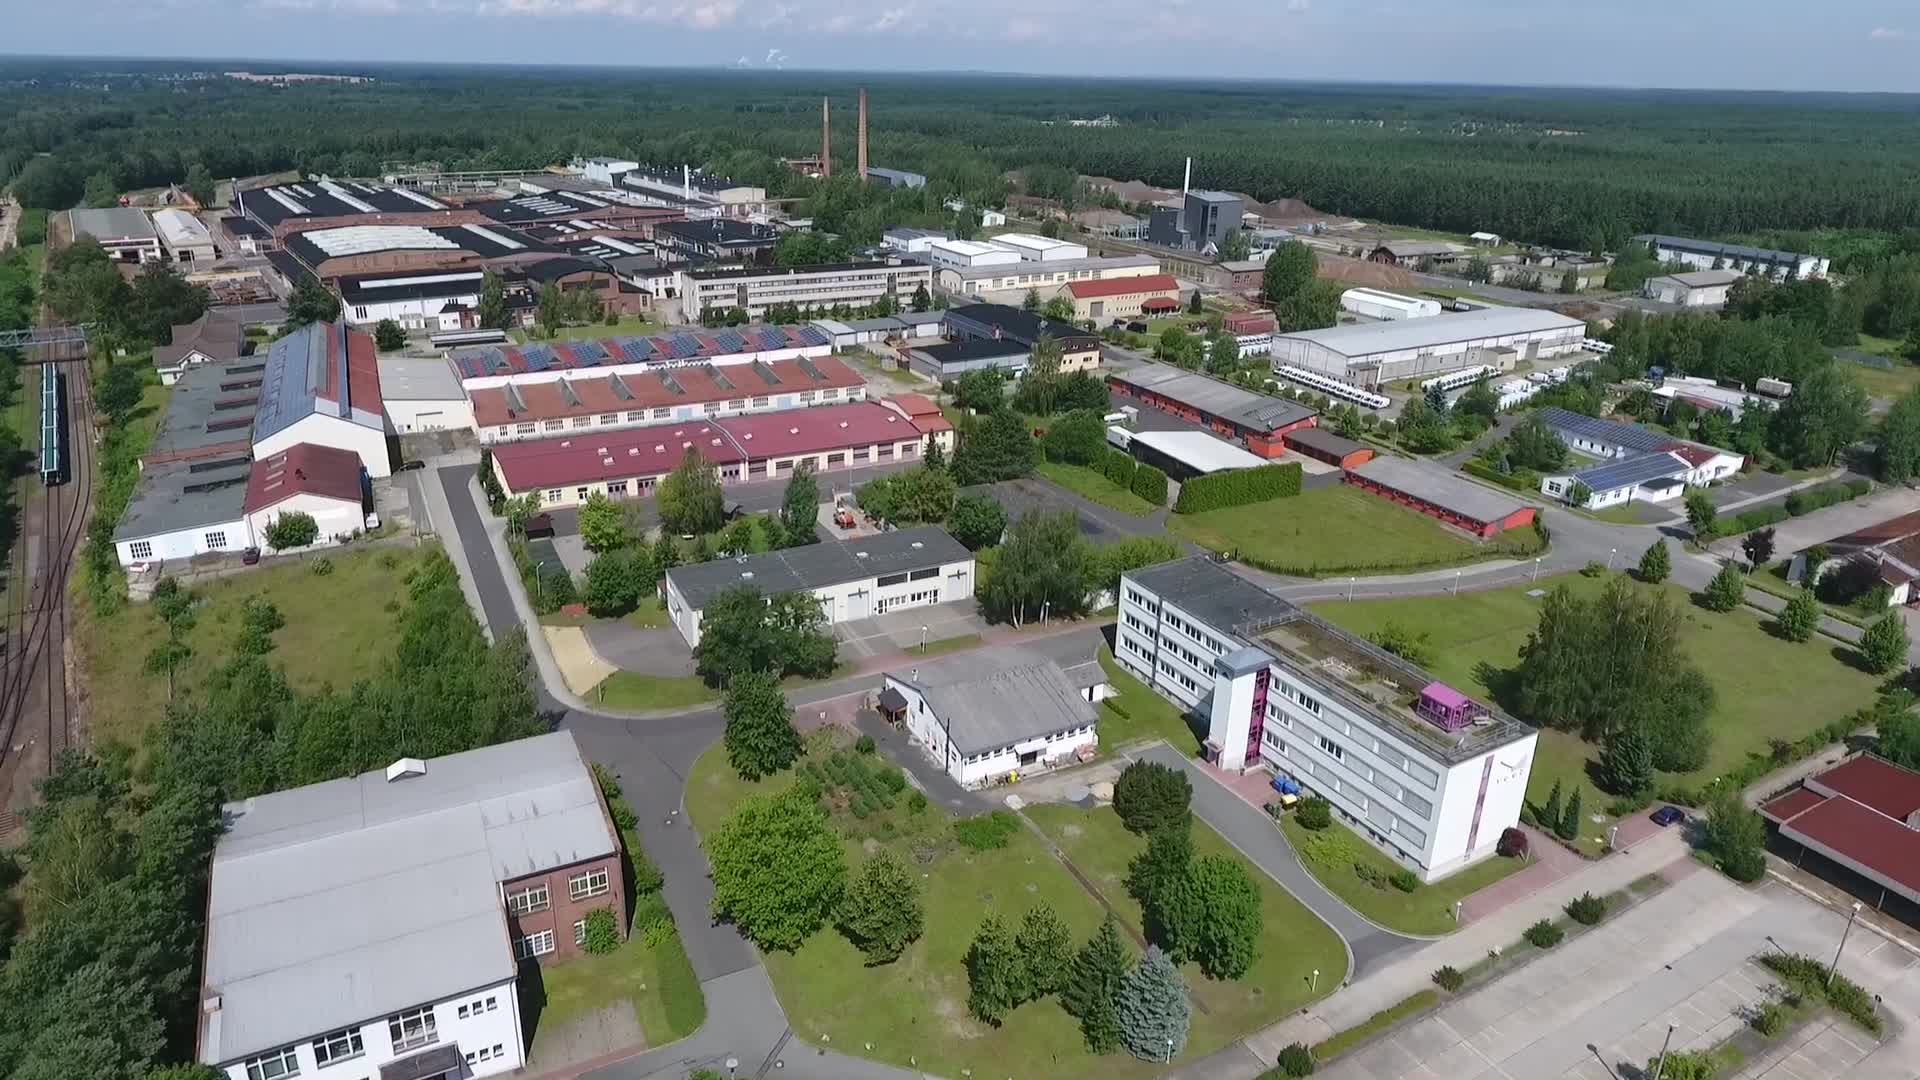 Niesky - Herzlich Willkommen in der Großen Kreisstadt Niesky im Landkreis Görlitz in Sachsen